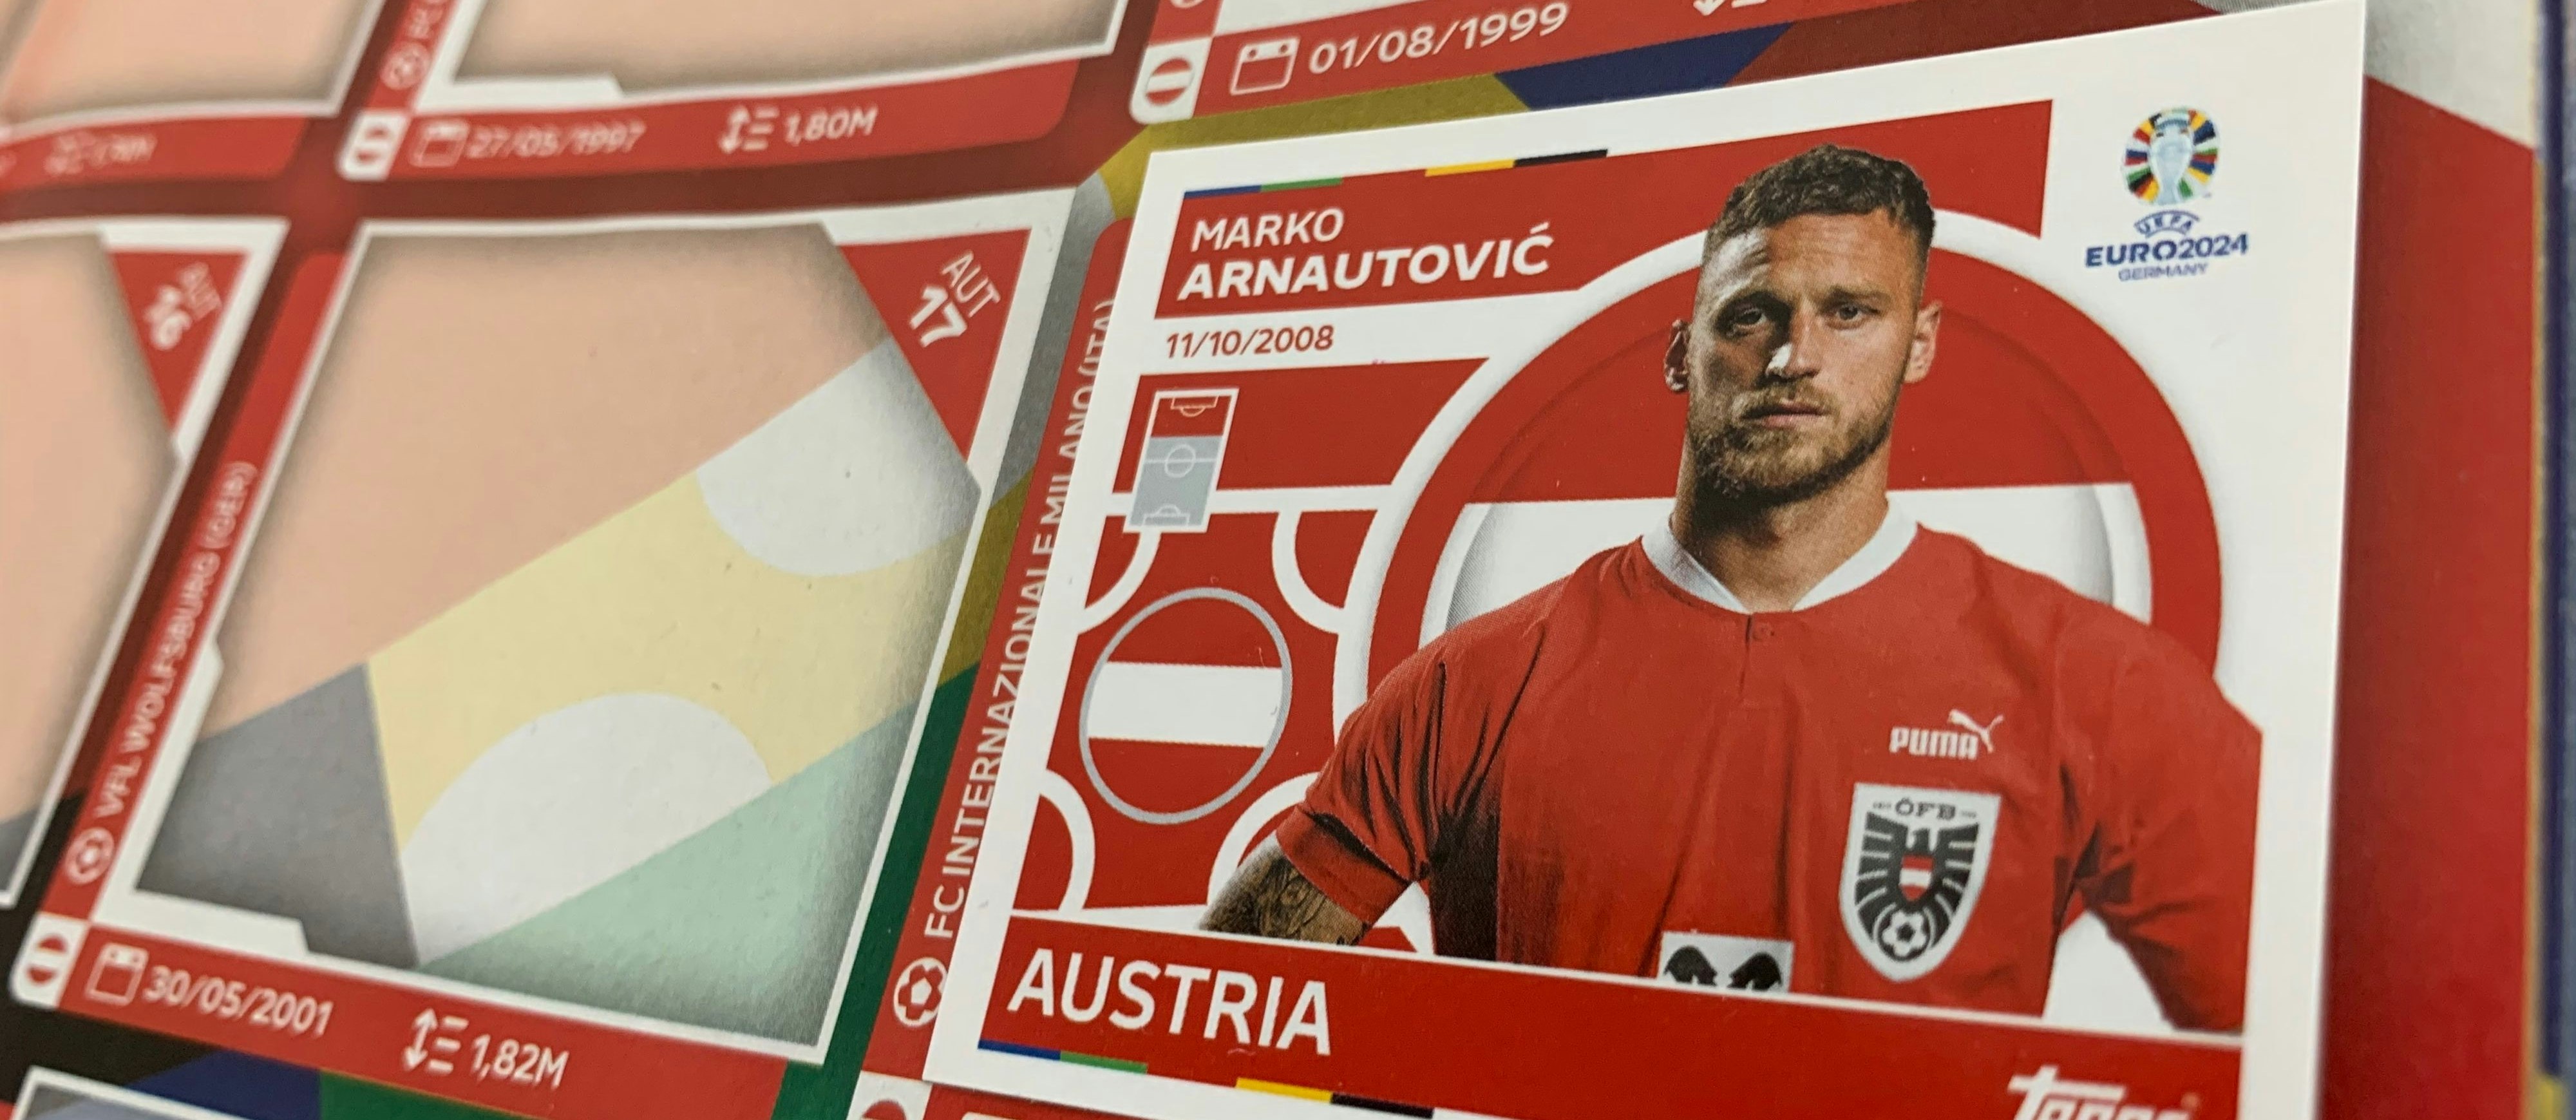 Österreichs EM-Rekordtorschütze Marko Arnautovic (16 Tore in 35 Spielen inkl. EM-Qualifikation) im neuen EURO 2024 Stickeralbum